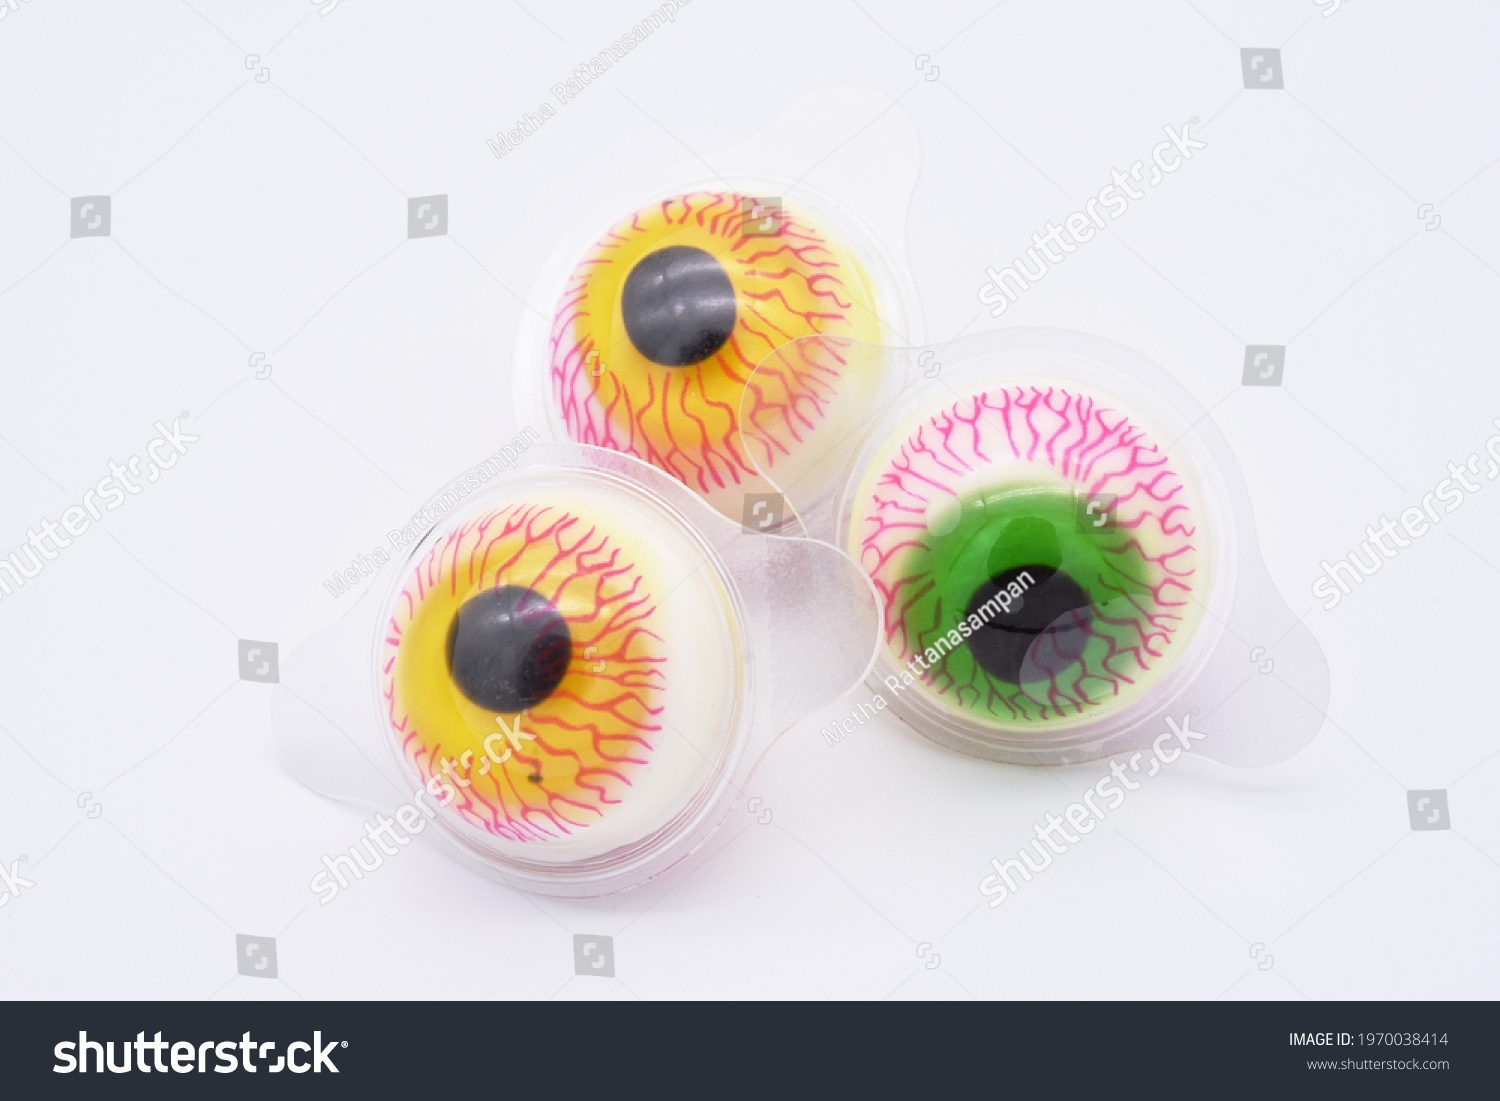 Gummy eyeballs